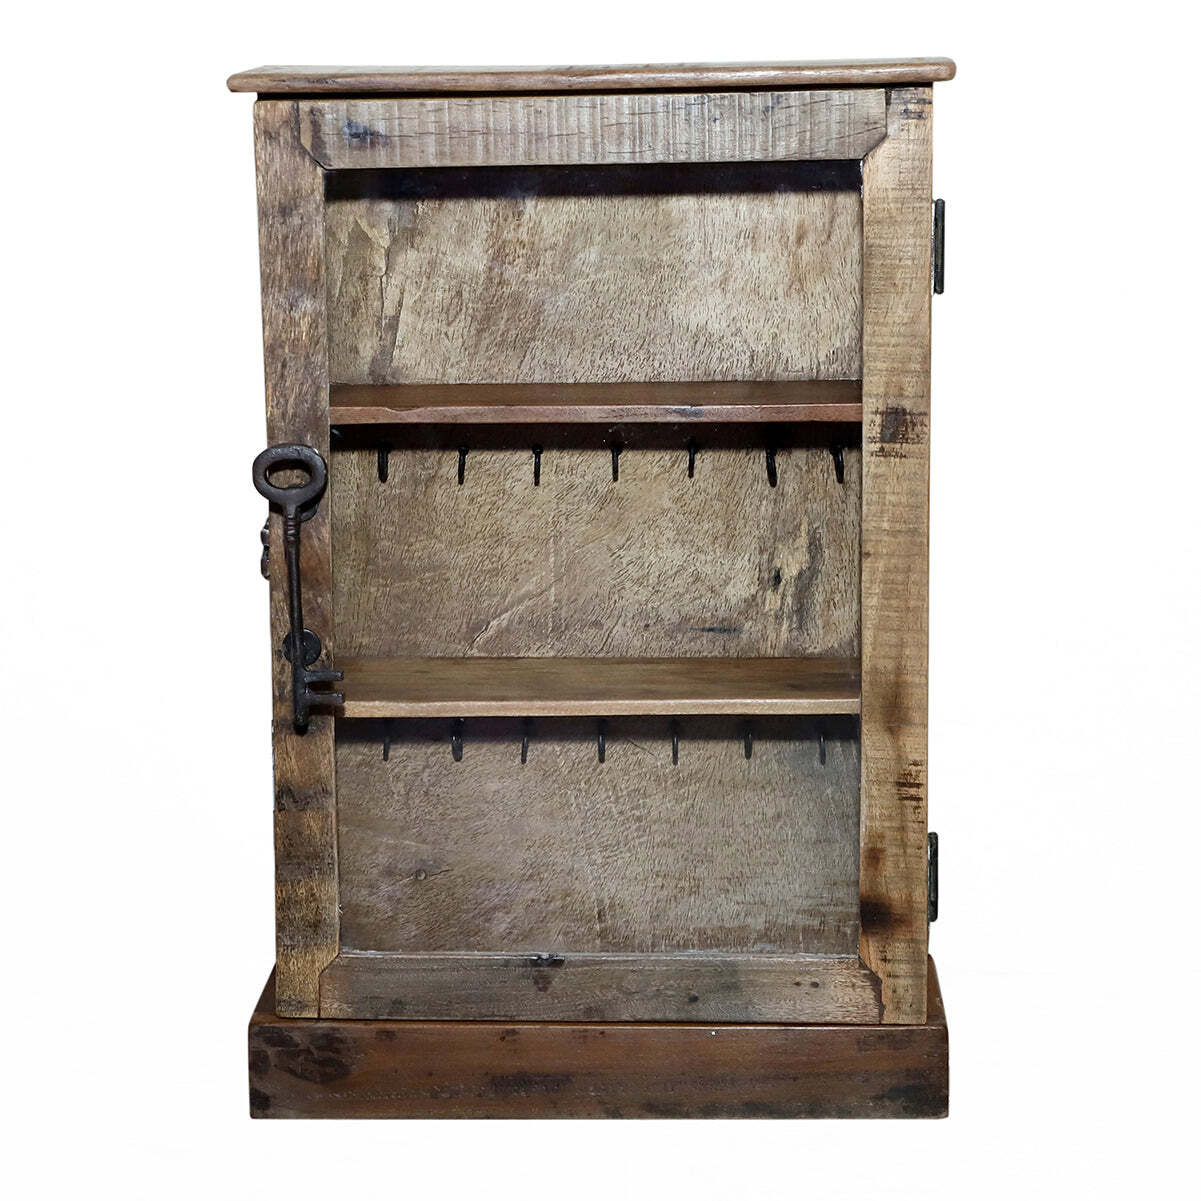 Key Cabinet with Hooks, Shelf and Antique Key Handle - image 1